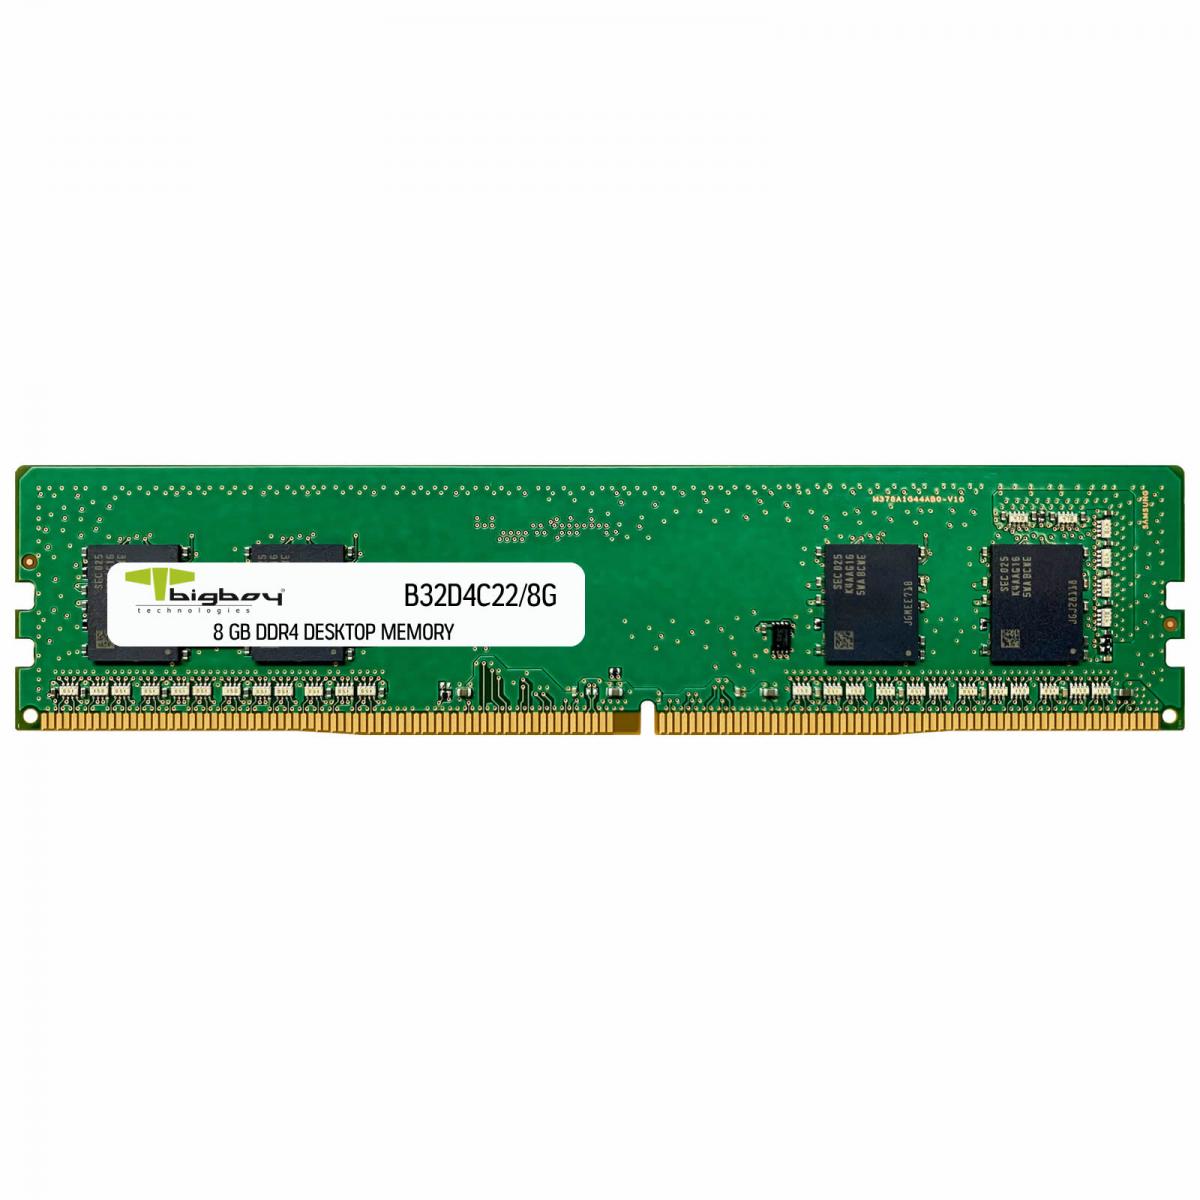 Bigboy 8GB DDR4 3200MHz CL22 Masaüstü Rami B32D4C22/8G